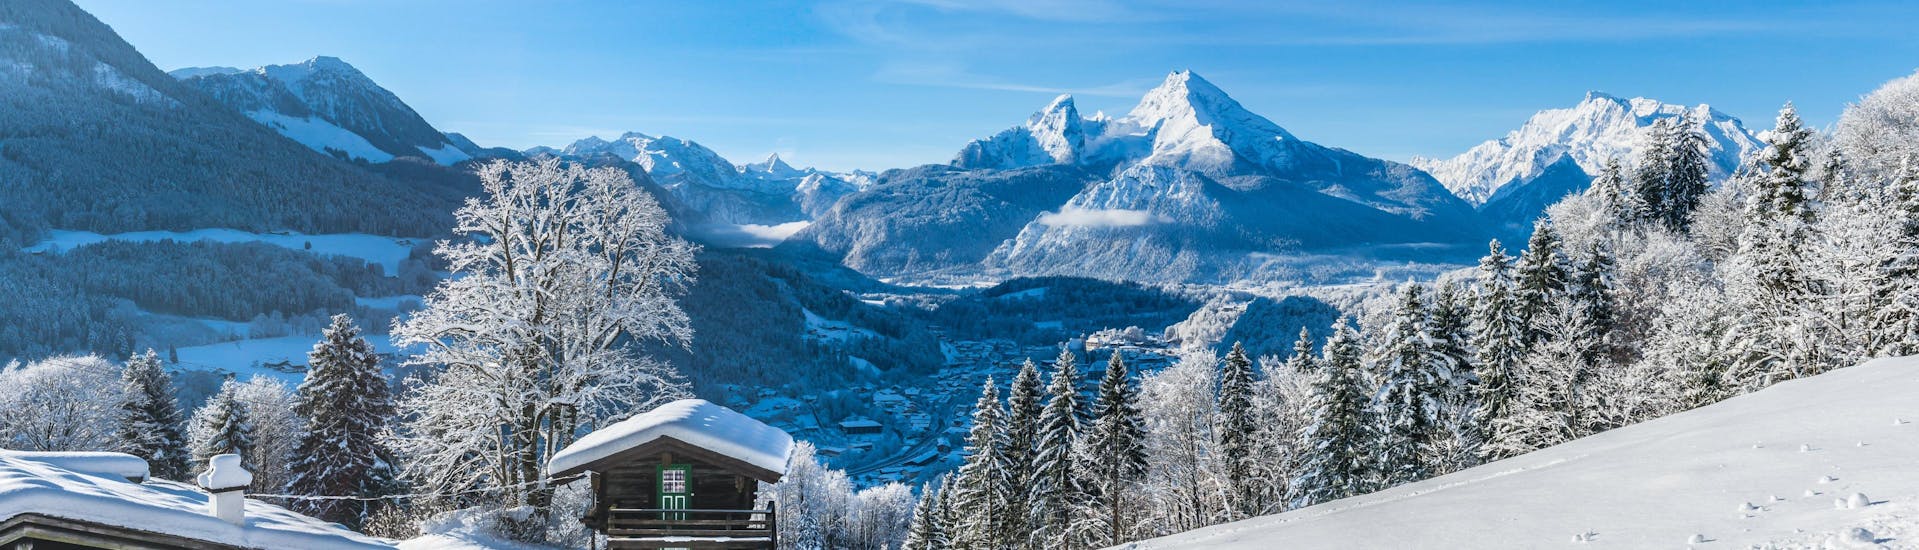 Ein Blick über die verträumte Winterlandschaft von Obersalzberg im Berchtesgadener Land, einem beliebten deutschen Skigebiet in dem Besucher bei einer der örtlichen Skischulen Skikurse buchen können.